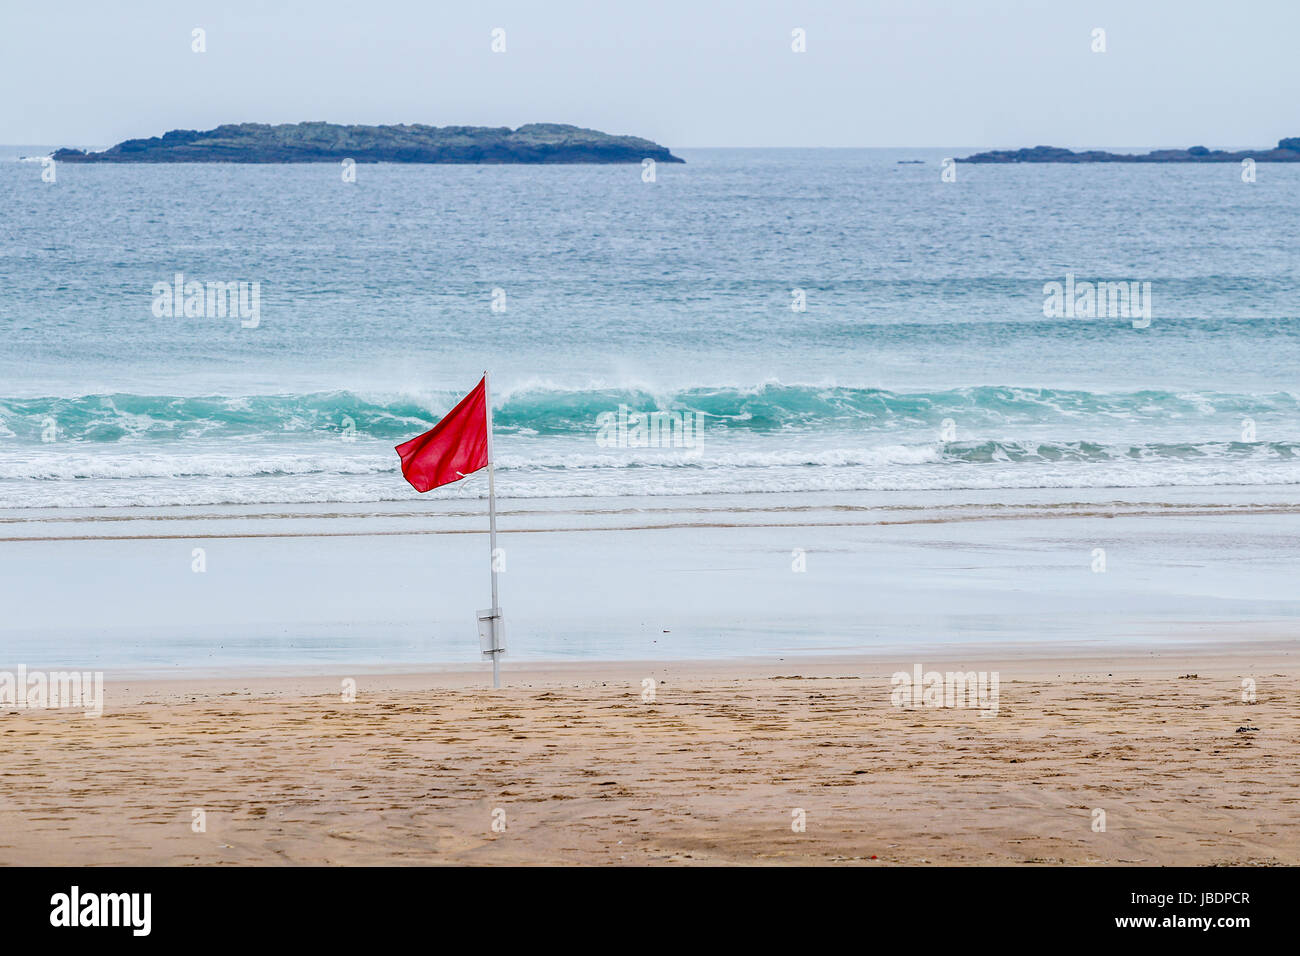 Bandera roja en la playa en Portrush, Irlanda del Norte, indicando un peligro como las altas olas o corrientes fuertes Foto de stock